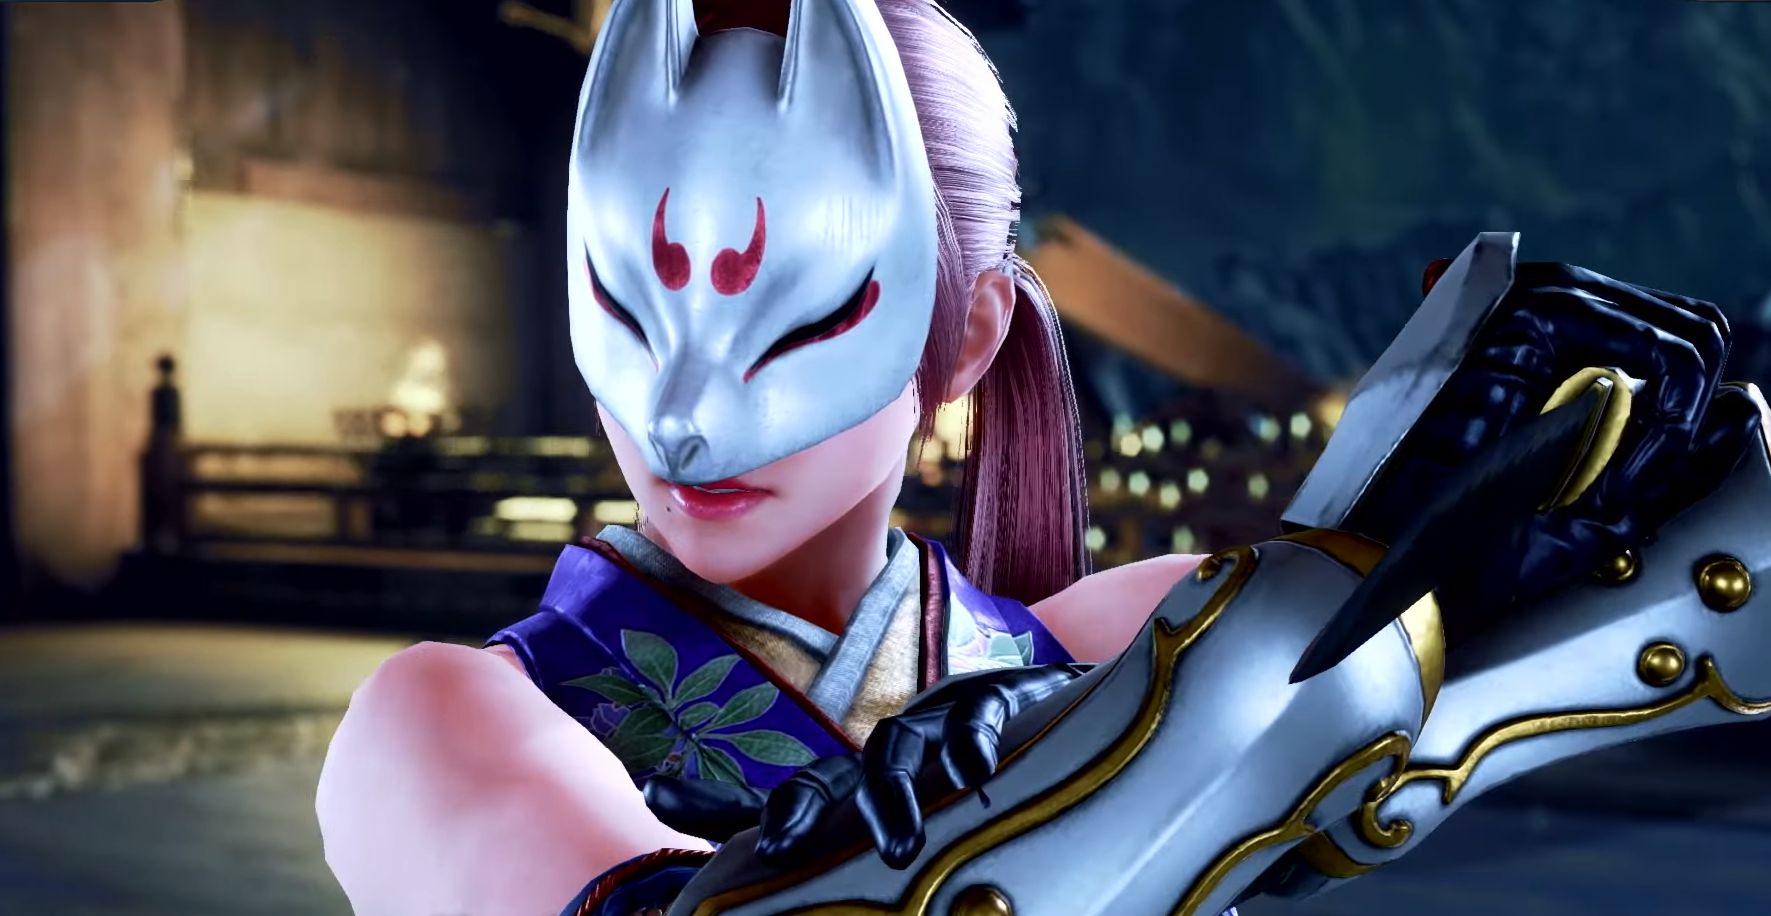 A close-up of Kunimitsu, as she appears in Tekken 7